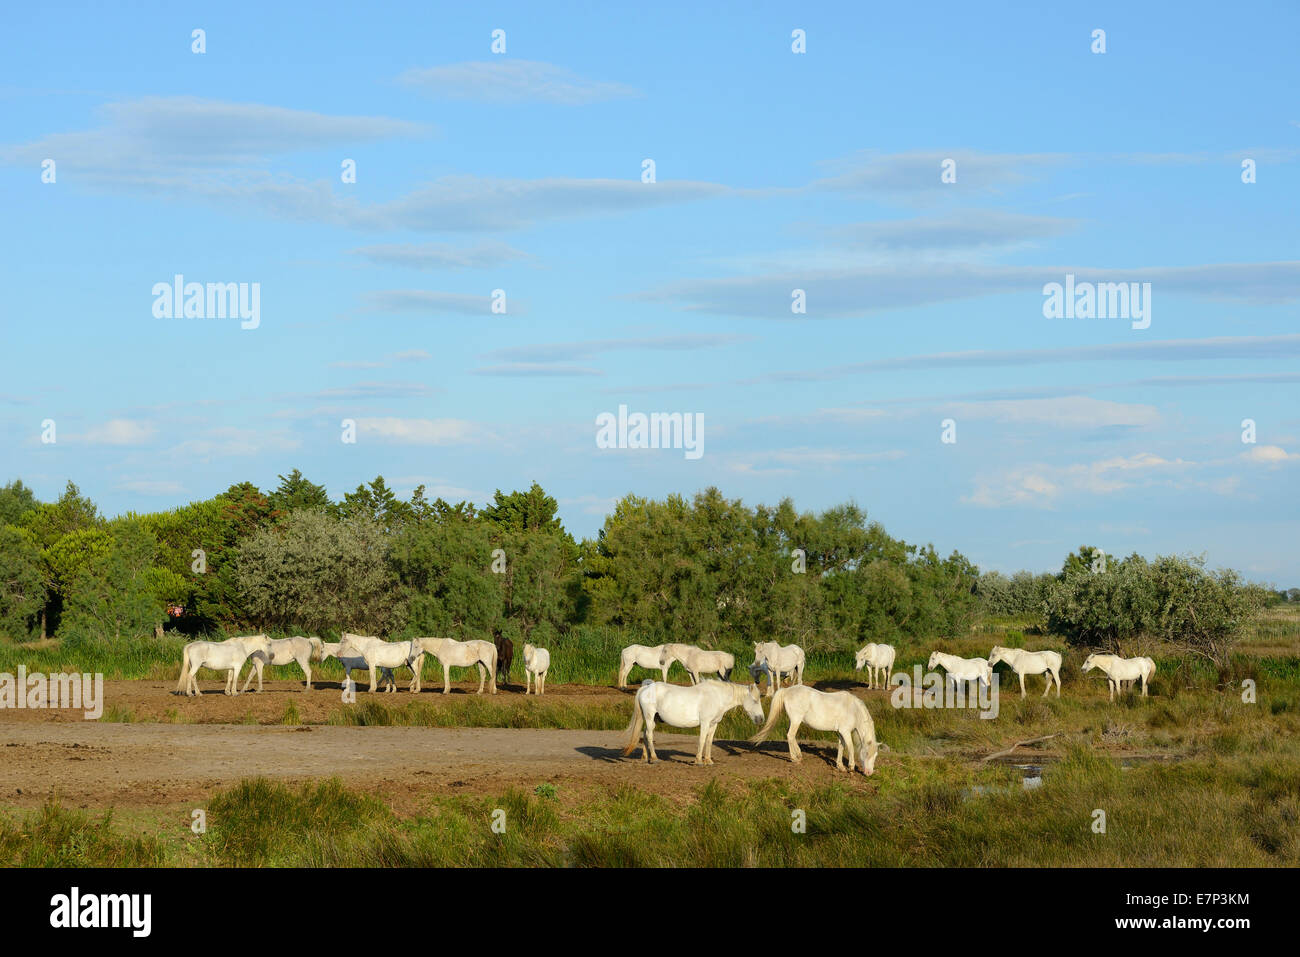 Europa, Frankreich, Languedoc - Roussillon, Camargue, weißes Pferd, Grauschimmel, Tier, Pferde, Herde Stockfoto